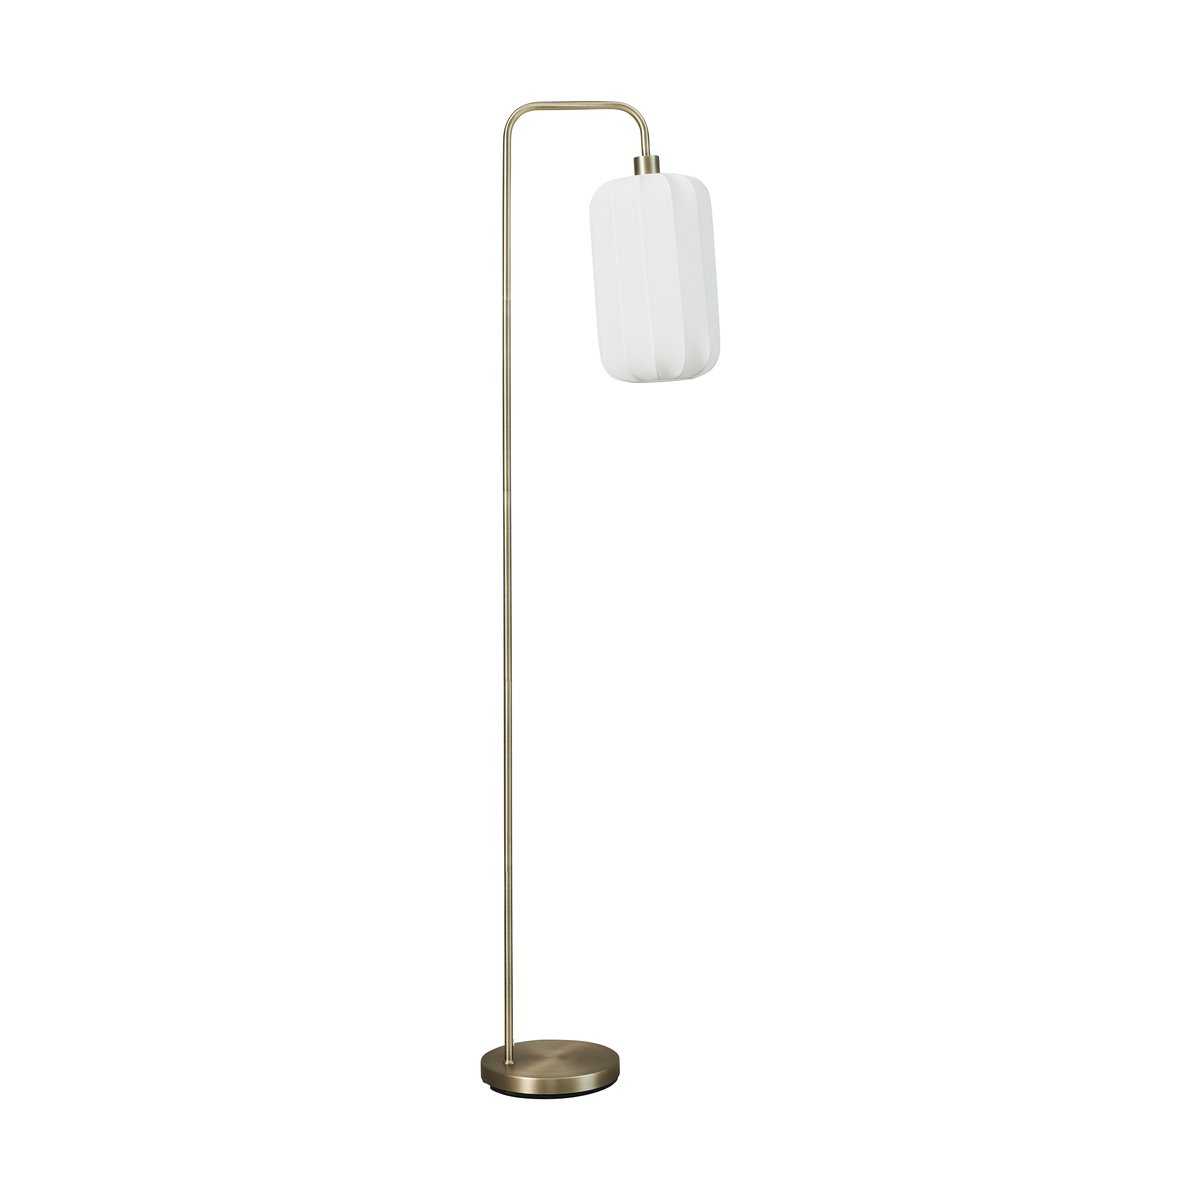 Lene Bjerre Sashie vloerlamp 160 cm White-Light Gold